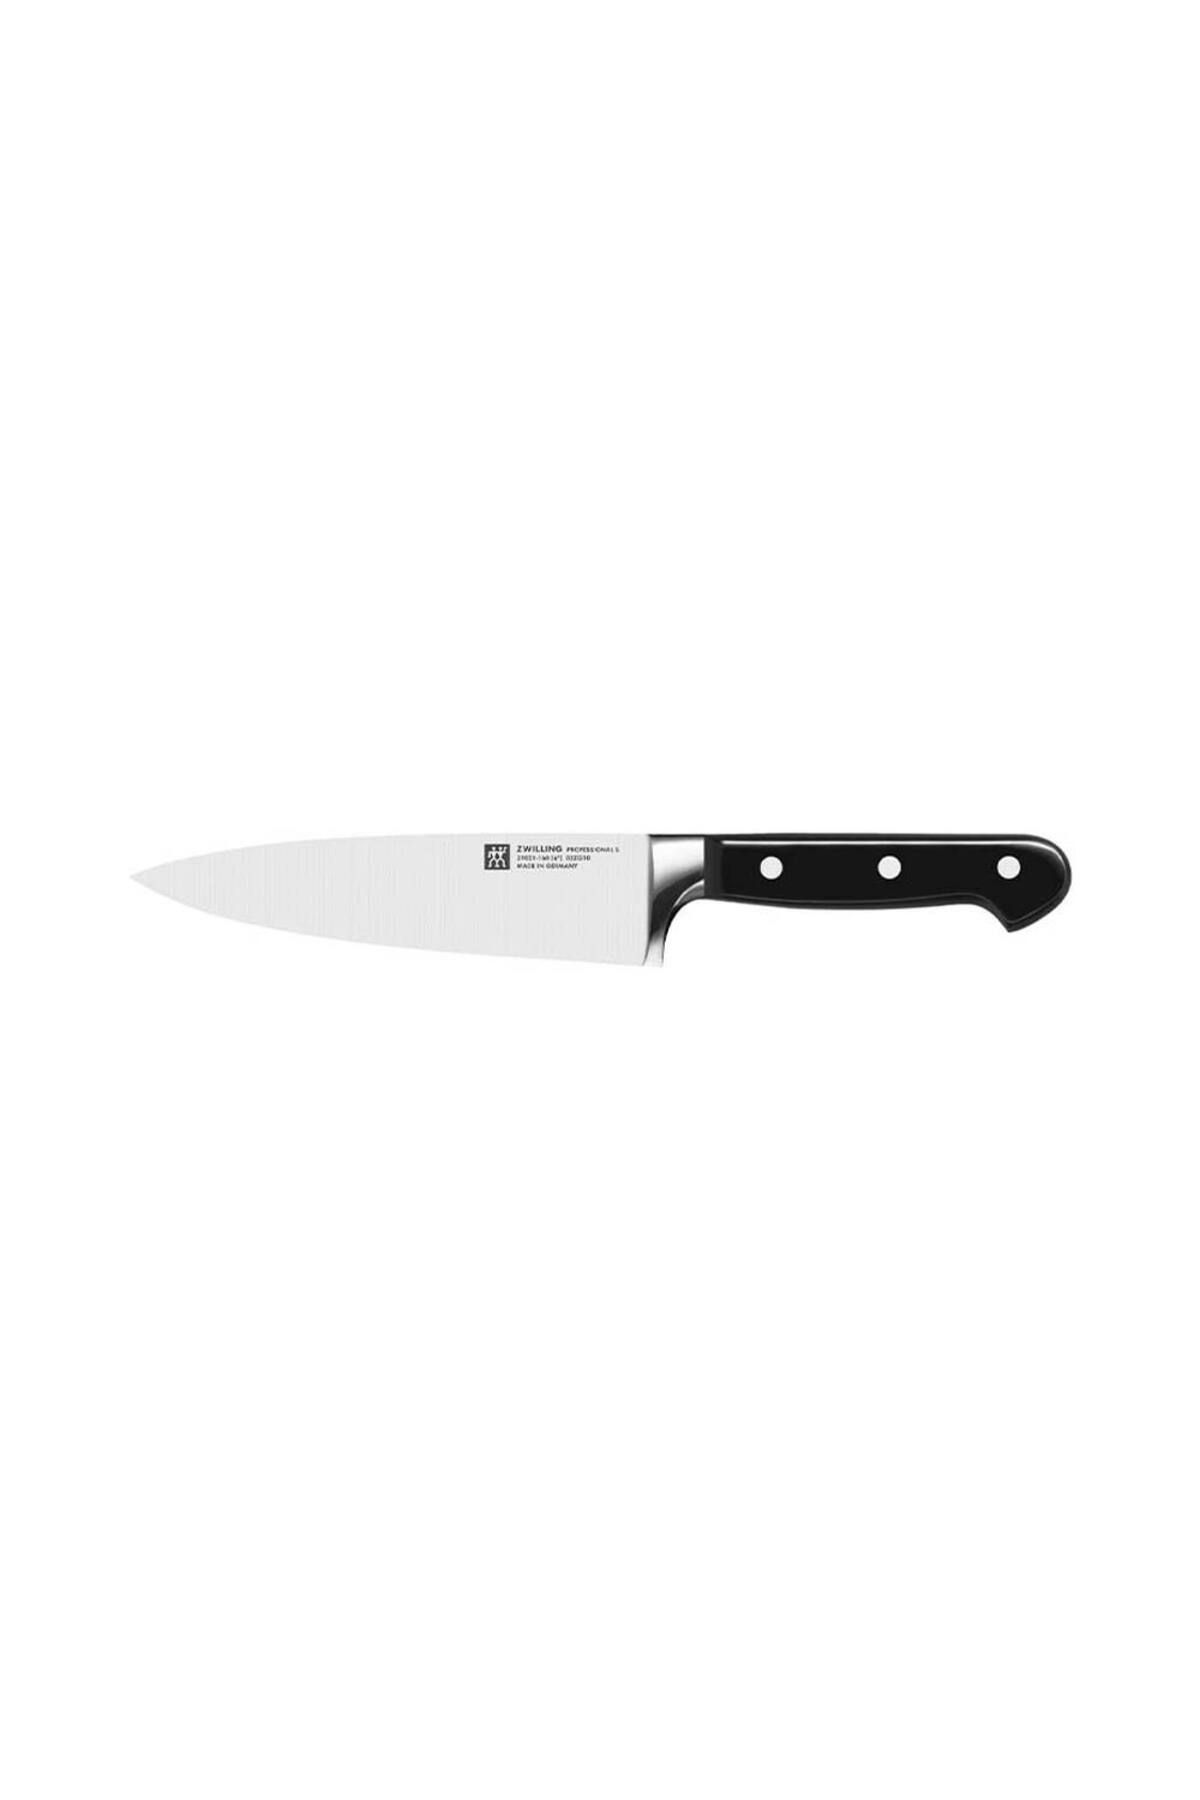 Zwilling 384012010 Pro Şef Bıçağı 20cm